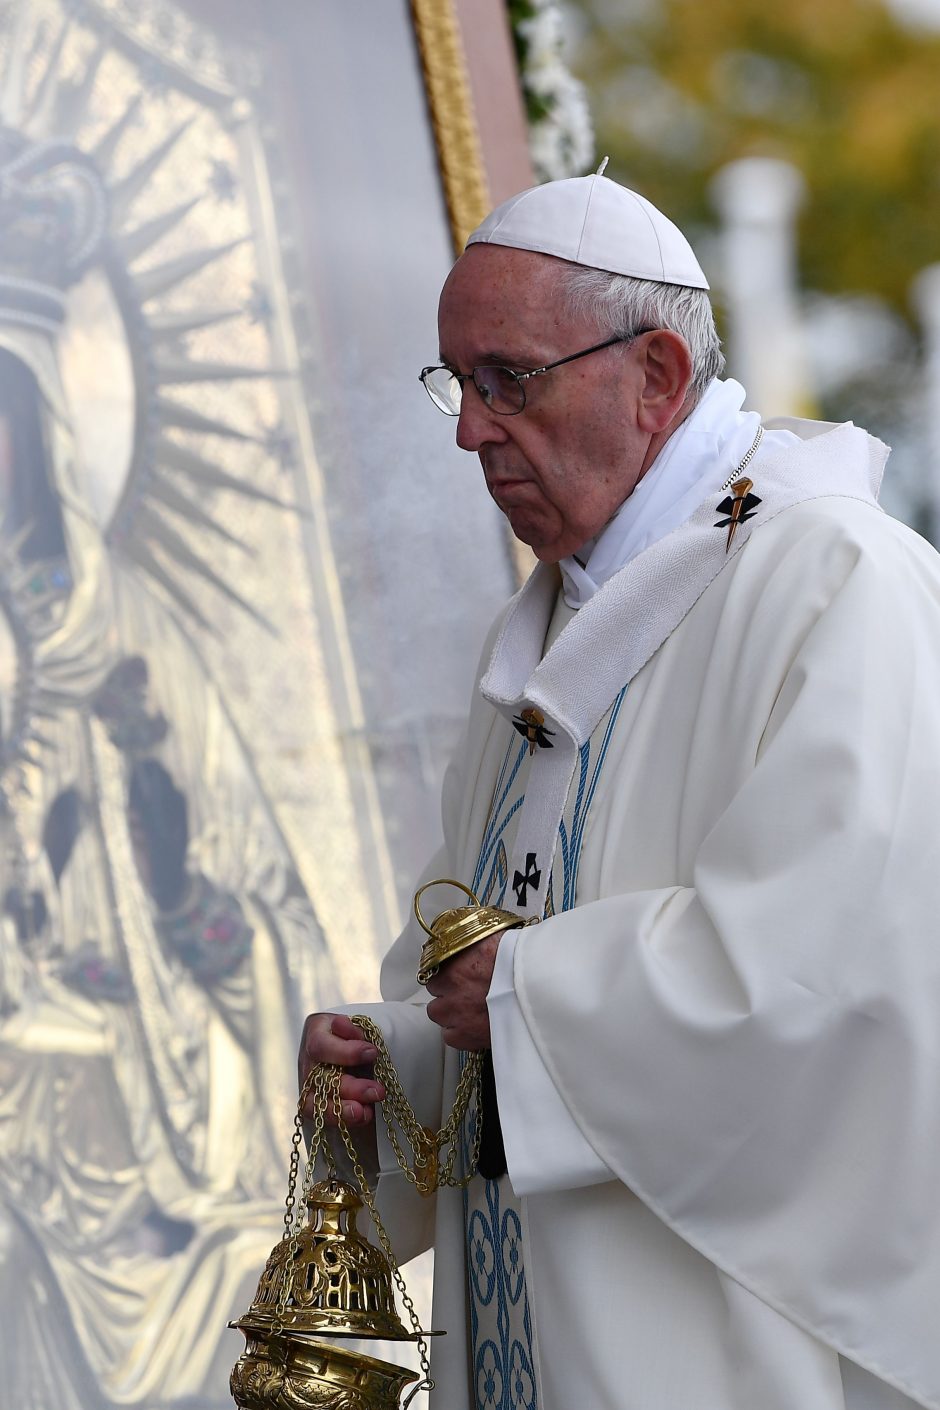 Popiežiaus vizitas Latvijoje